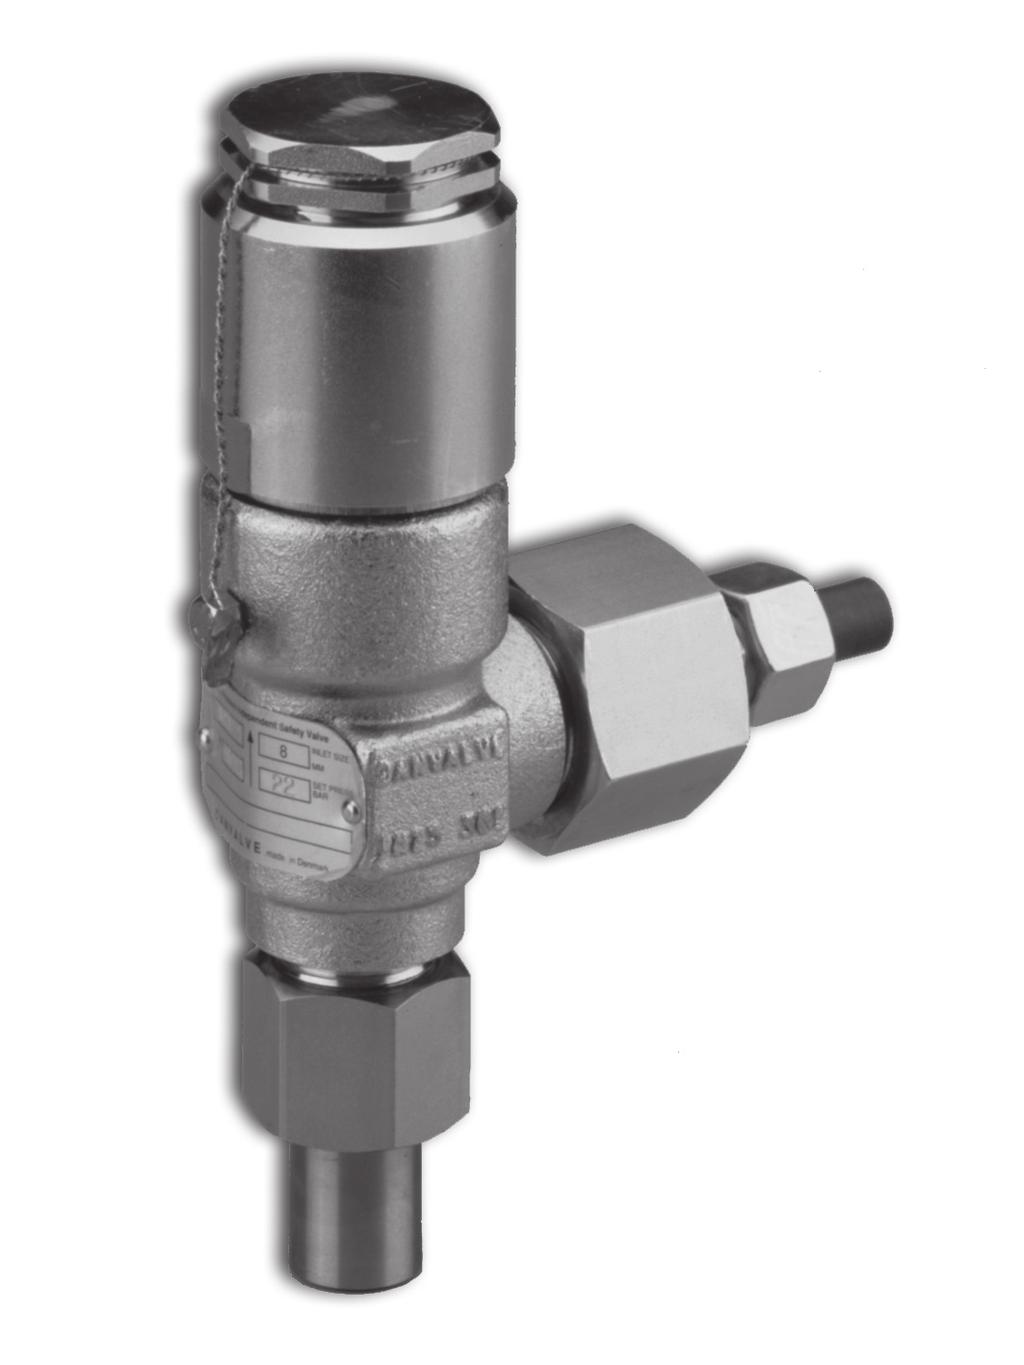 Introducción La válvula BSV es una válvula estándar de seguridad, independiente de la presión de salida, especialmente diseñada para proteger pequeños componentes de la instalación frente a presiones